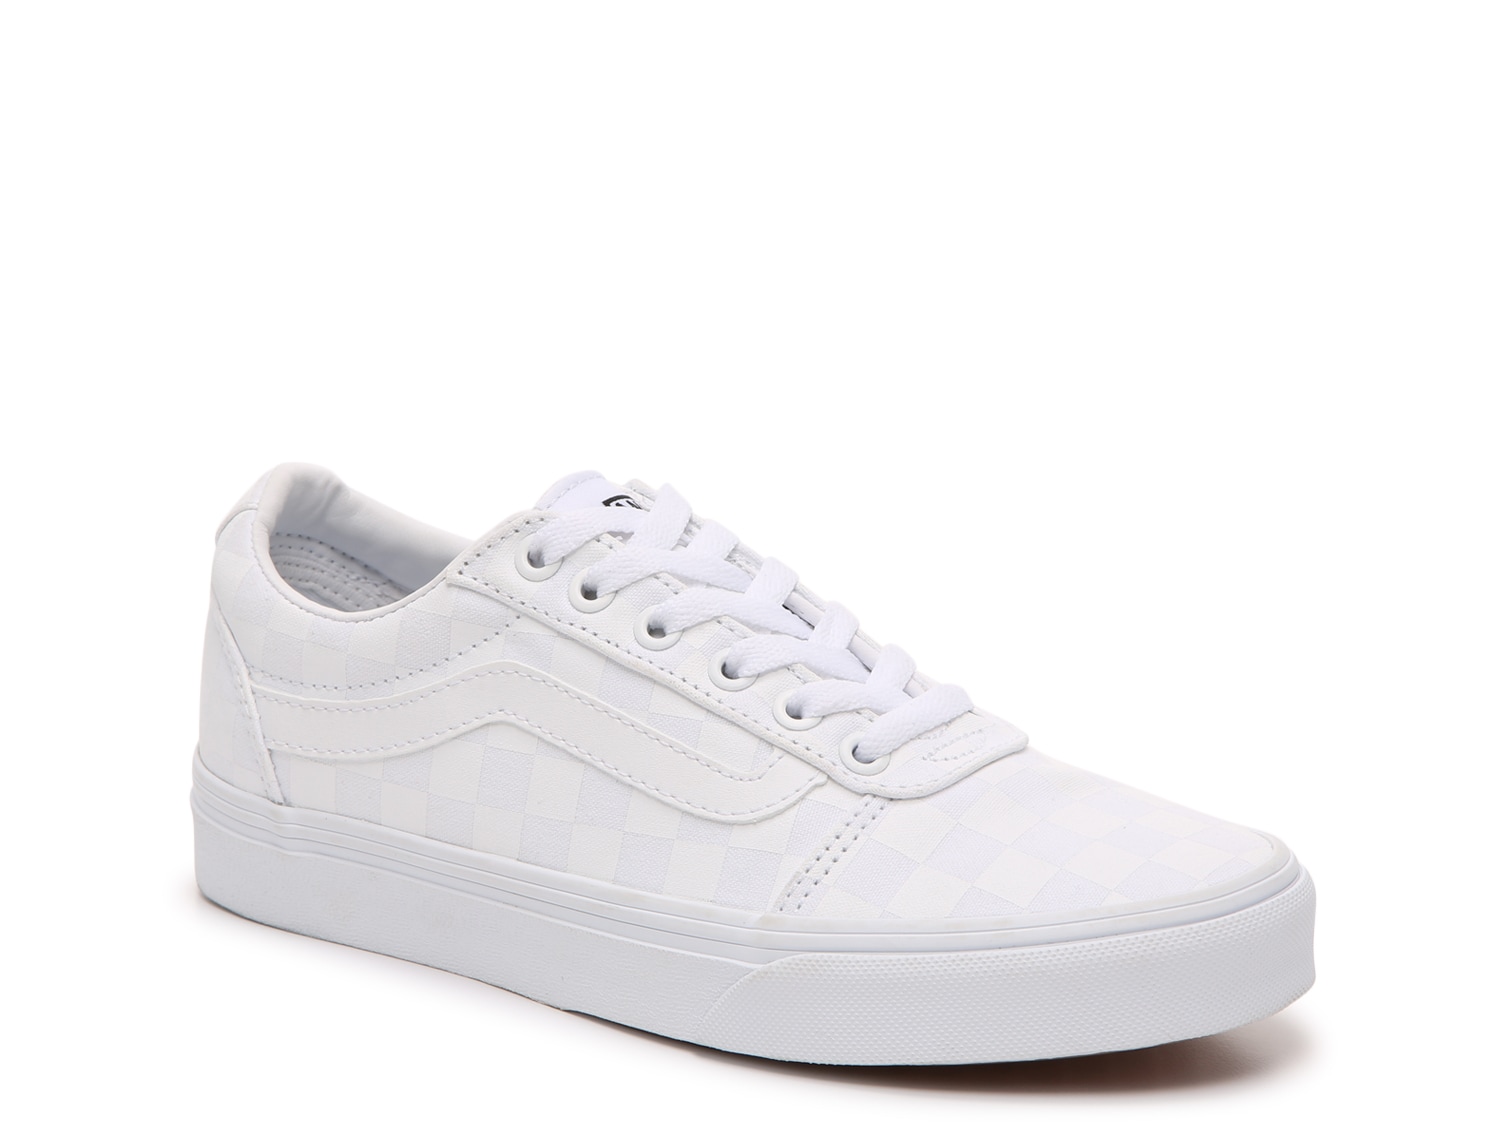 white van sneakers